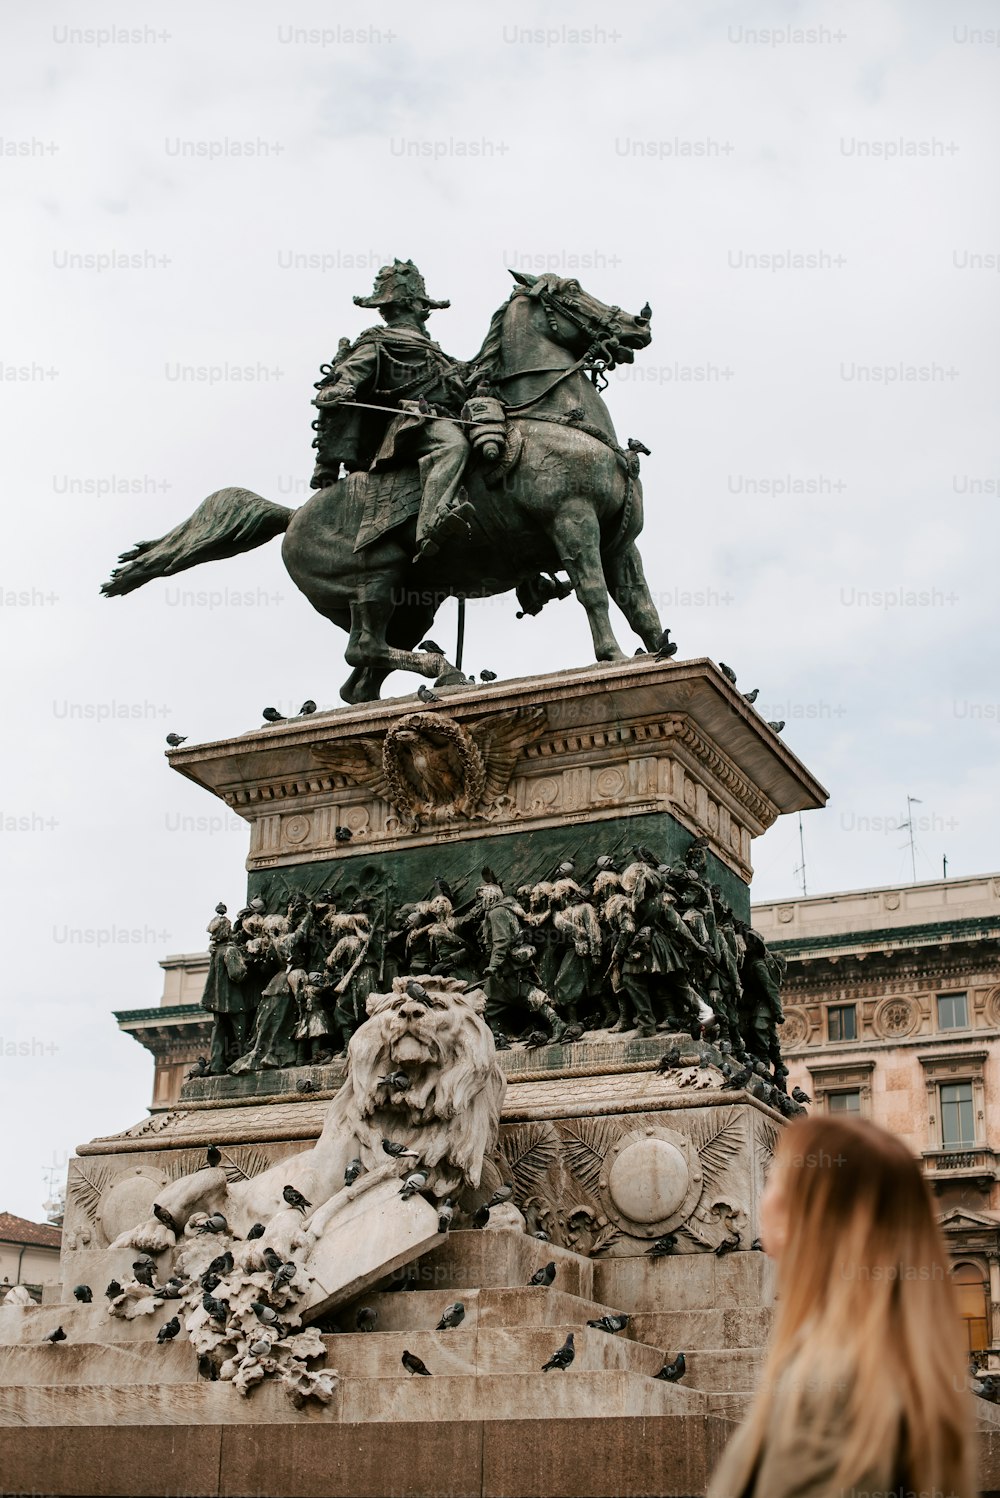 Eine Statue eines Mannes auf einem Pferd auf einem Podest